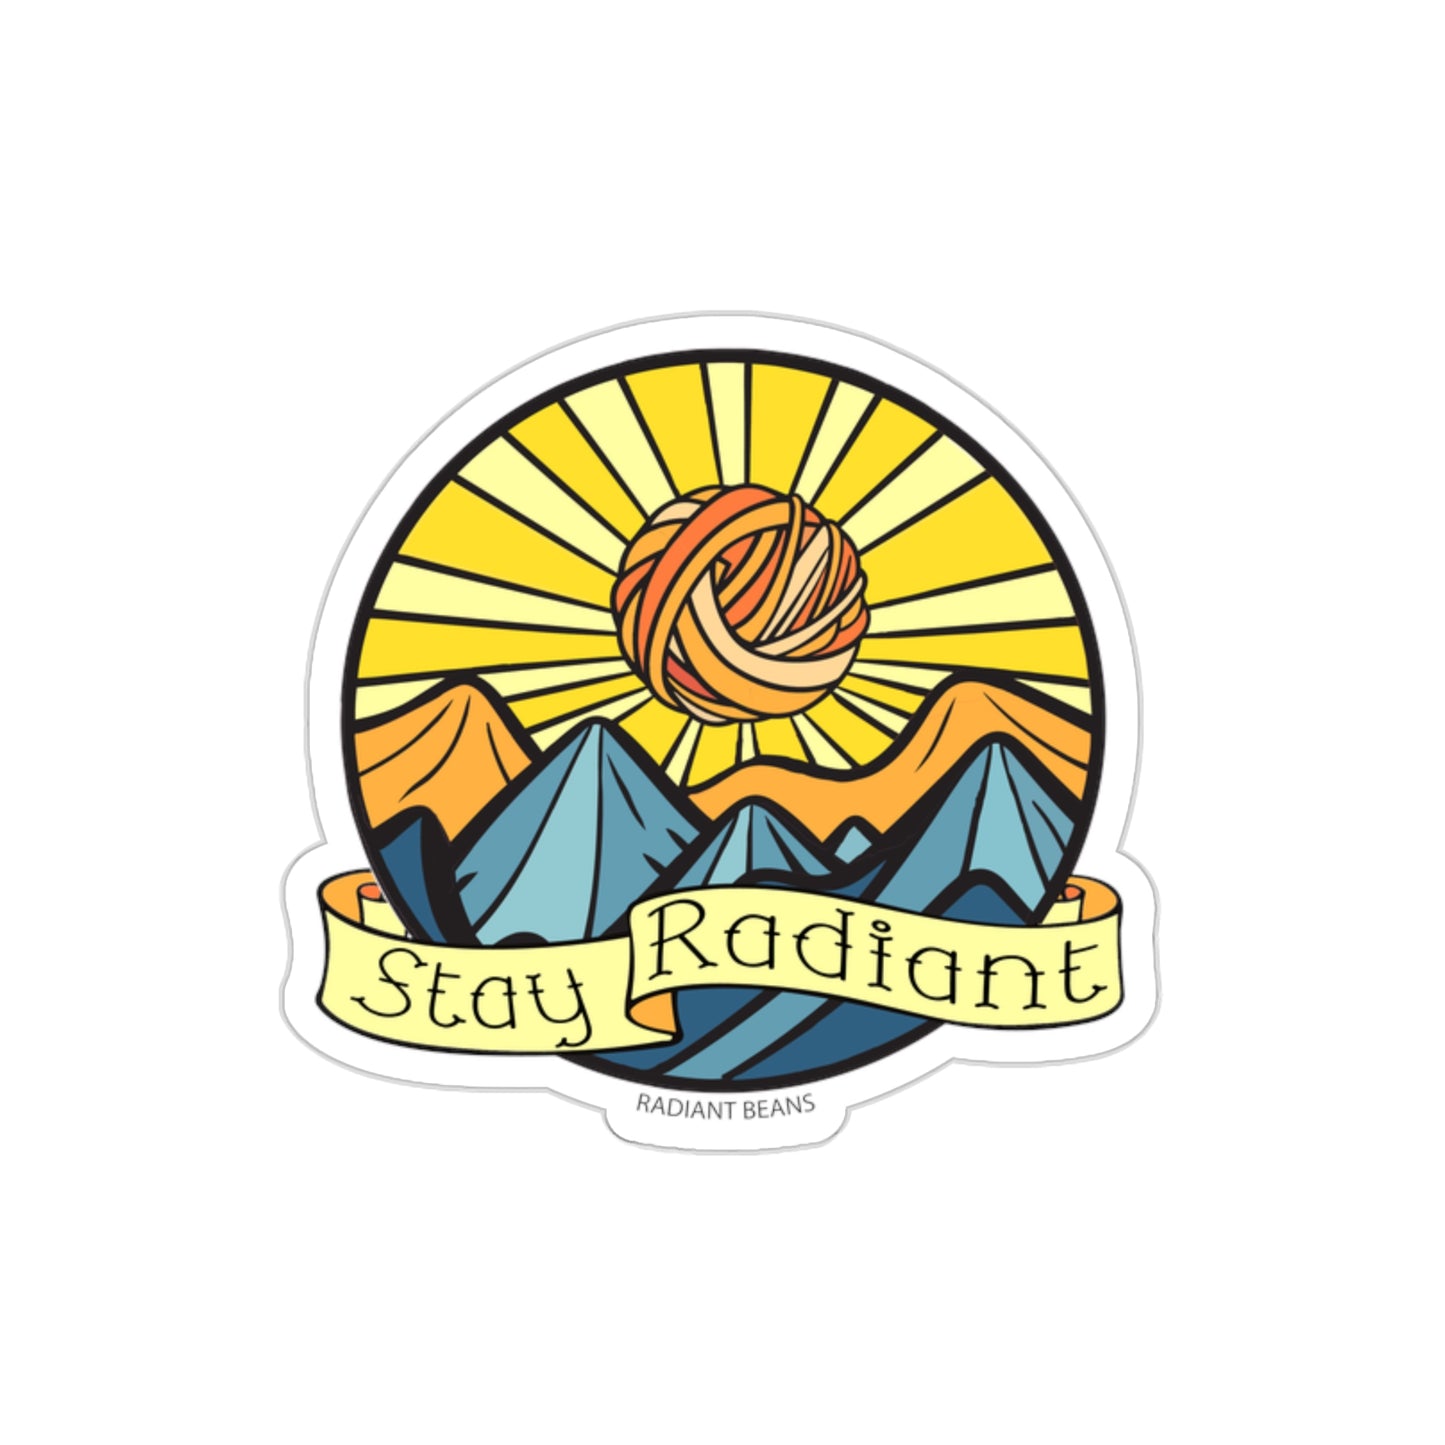 Stay Radiant - Vinyl Sticker